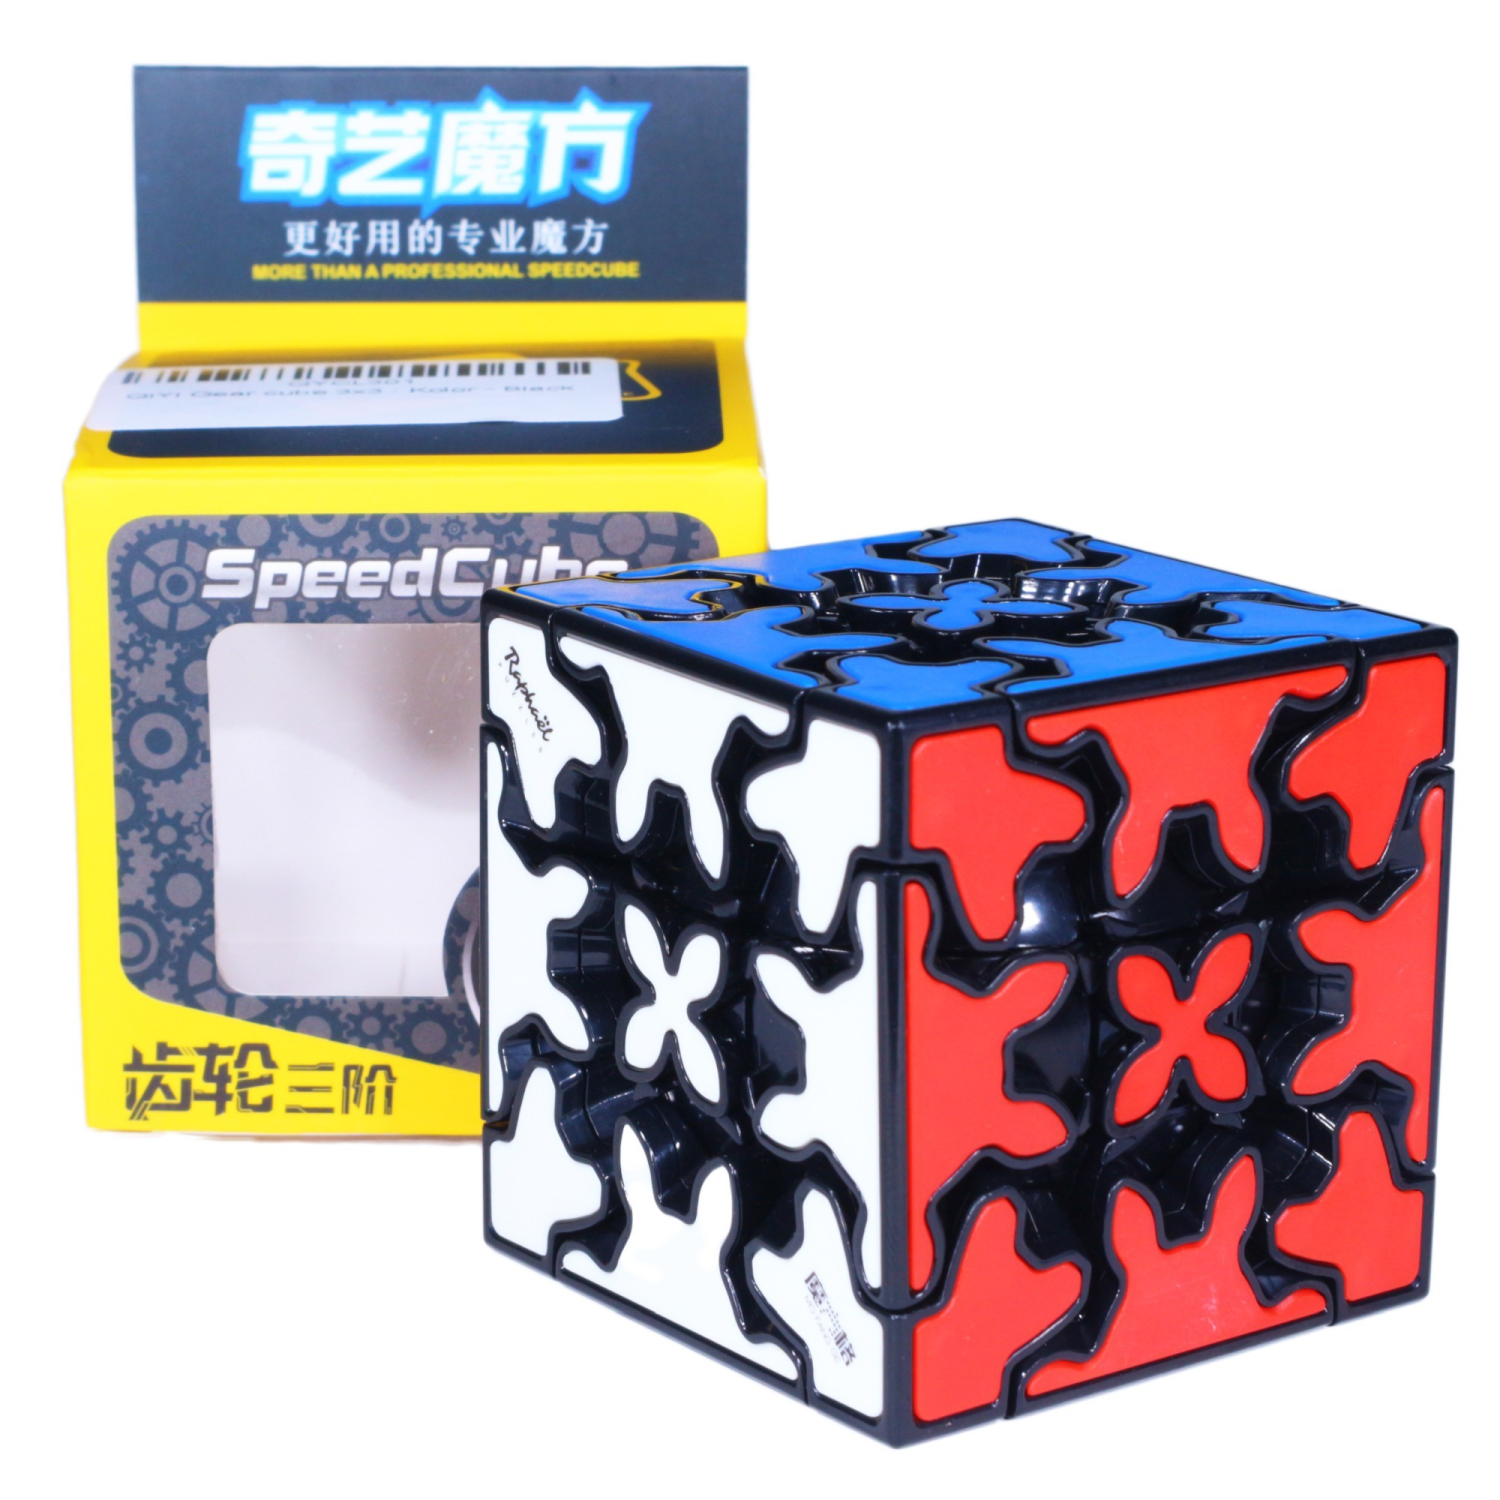 Cubo 3x3 Engranajes Gear Cube QiYi